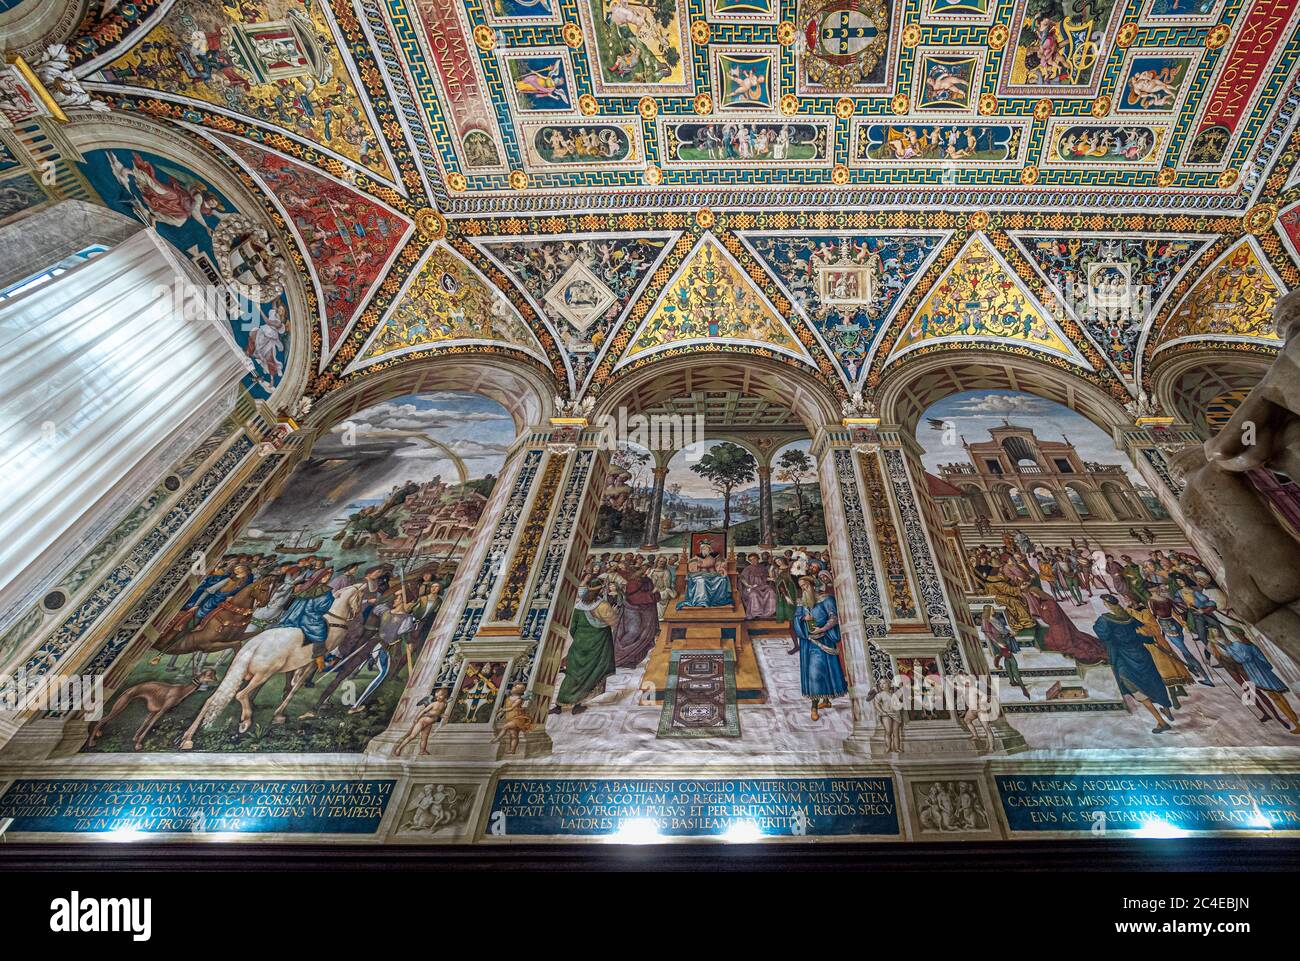 The Piccolomini Library, Siena Cathedral. Tuscany, Italy. Stock Photo